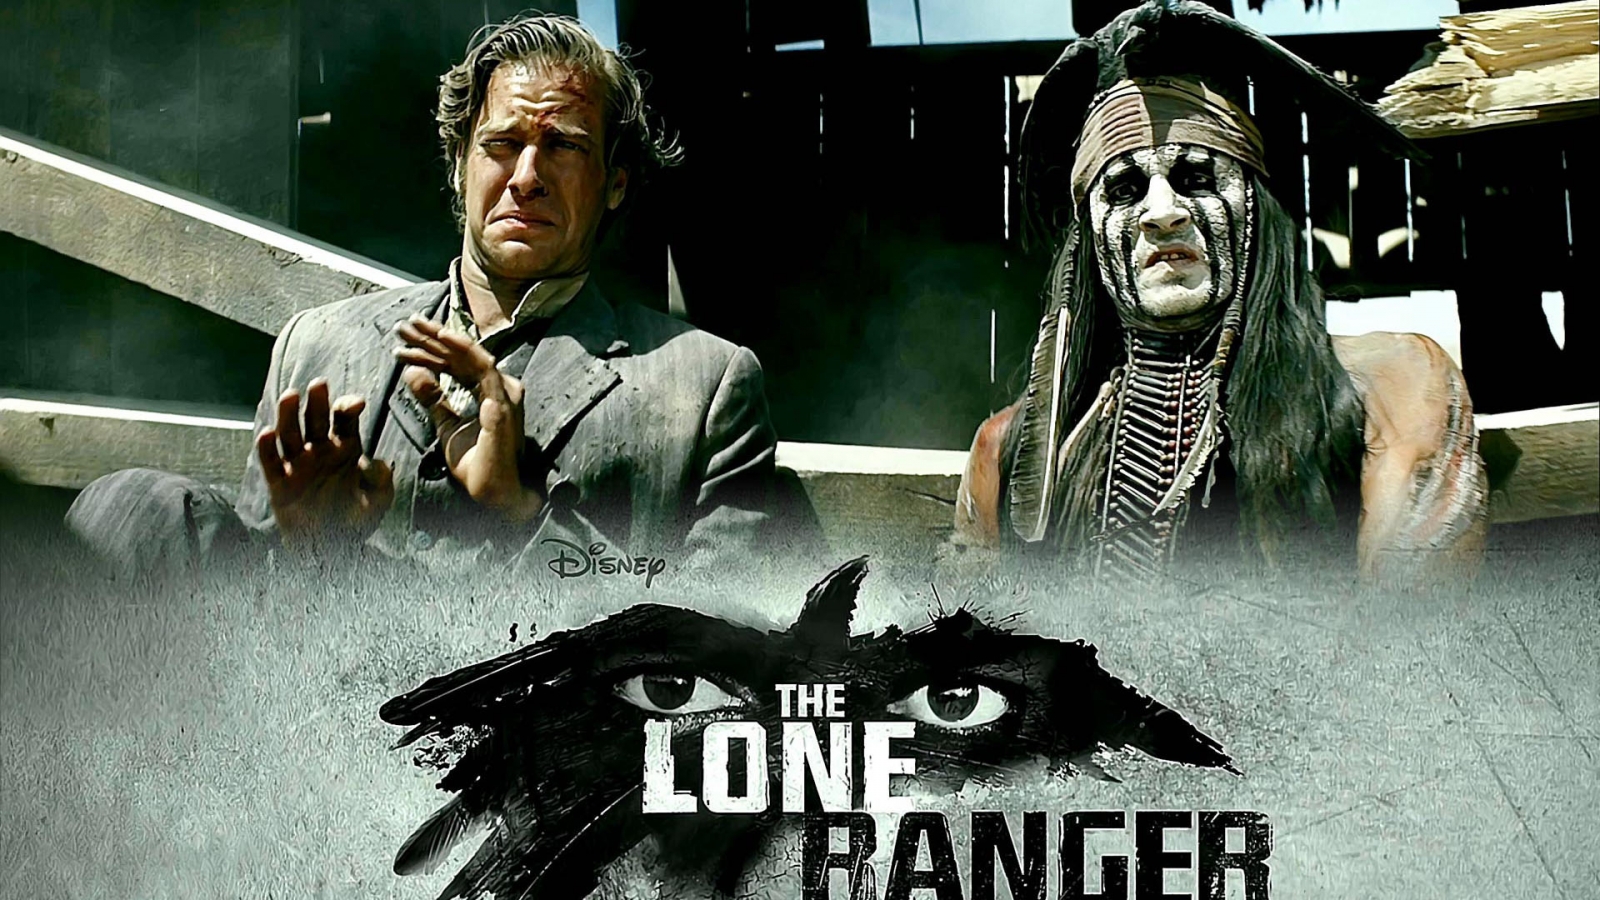 2013 The Lone Ranger for 1600 x 900 HDTV resolution